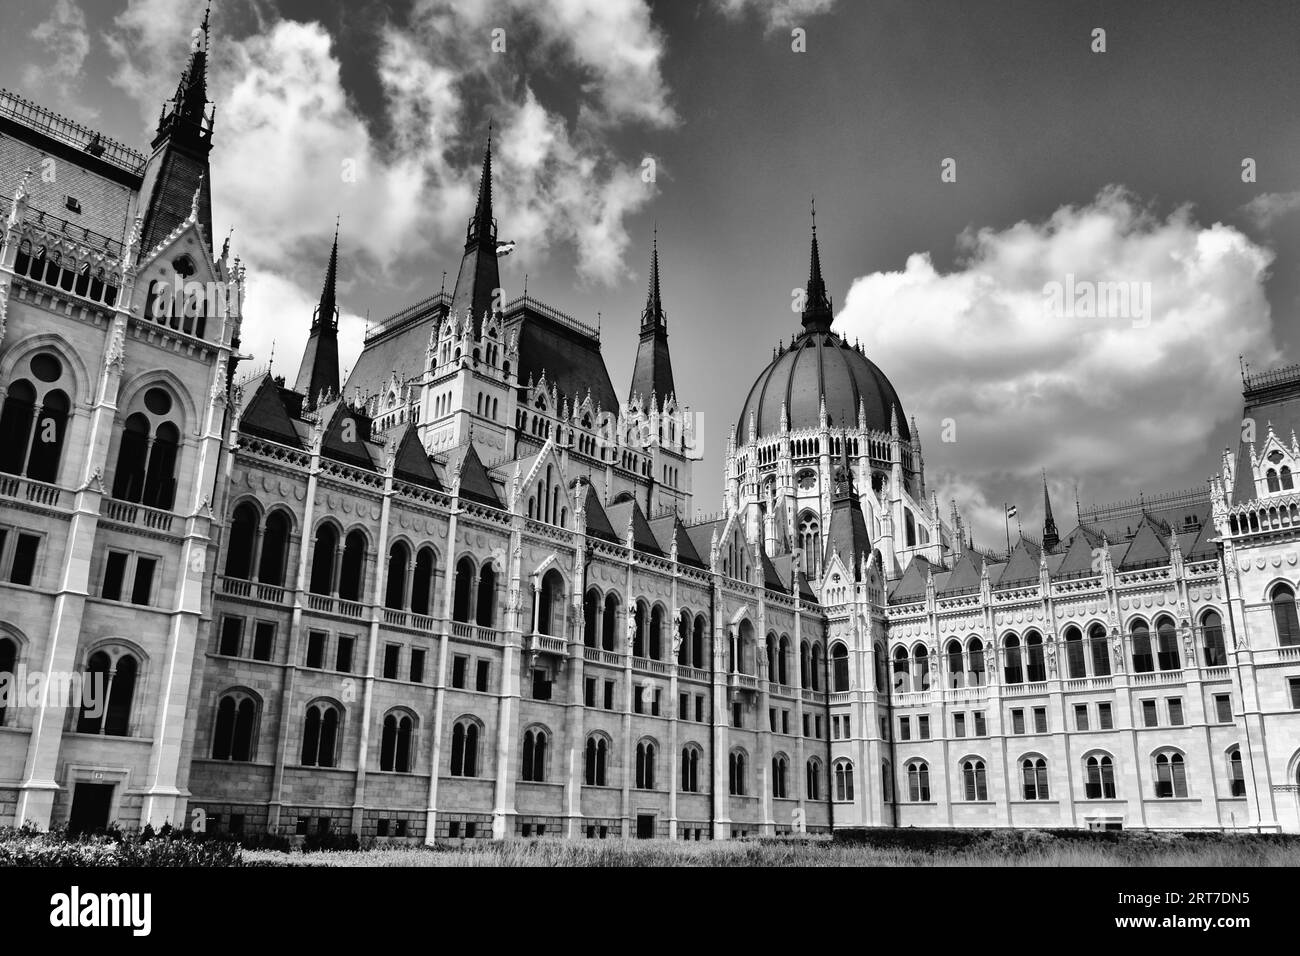 Außenansicht des ungarischen Parlaments in Budapest. Schwarzweißfoto. Steinbau. Neogotischer Stil. Beliebte Reiseattraktion Stockfoto